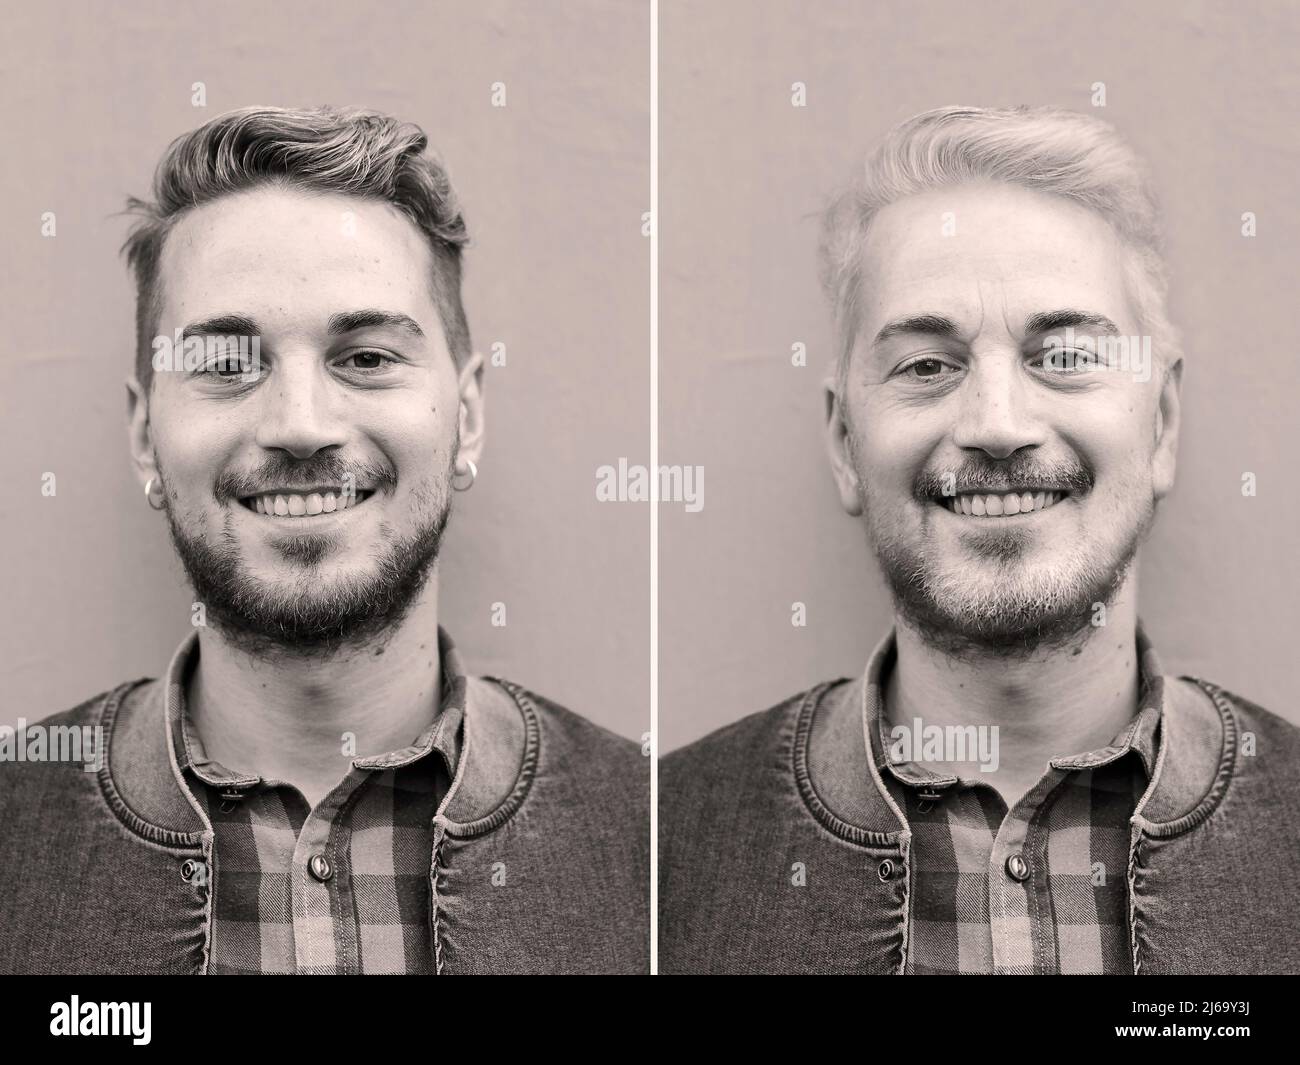 Ritratto comparativo dello stesso uomo caucasico giovane e vecchio - confronto tra volto giovane e vecchio - processo di invecchiamento per gli uomini - UV fi bianco e nero Foto Stock